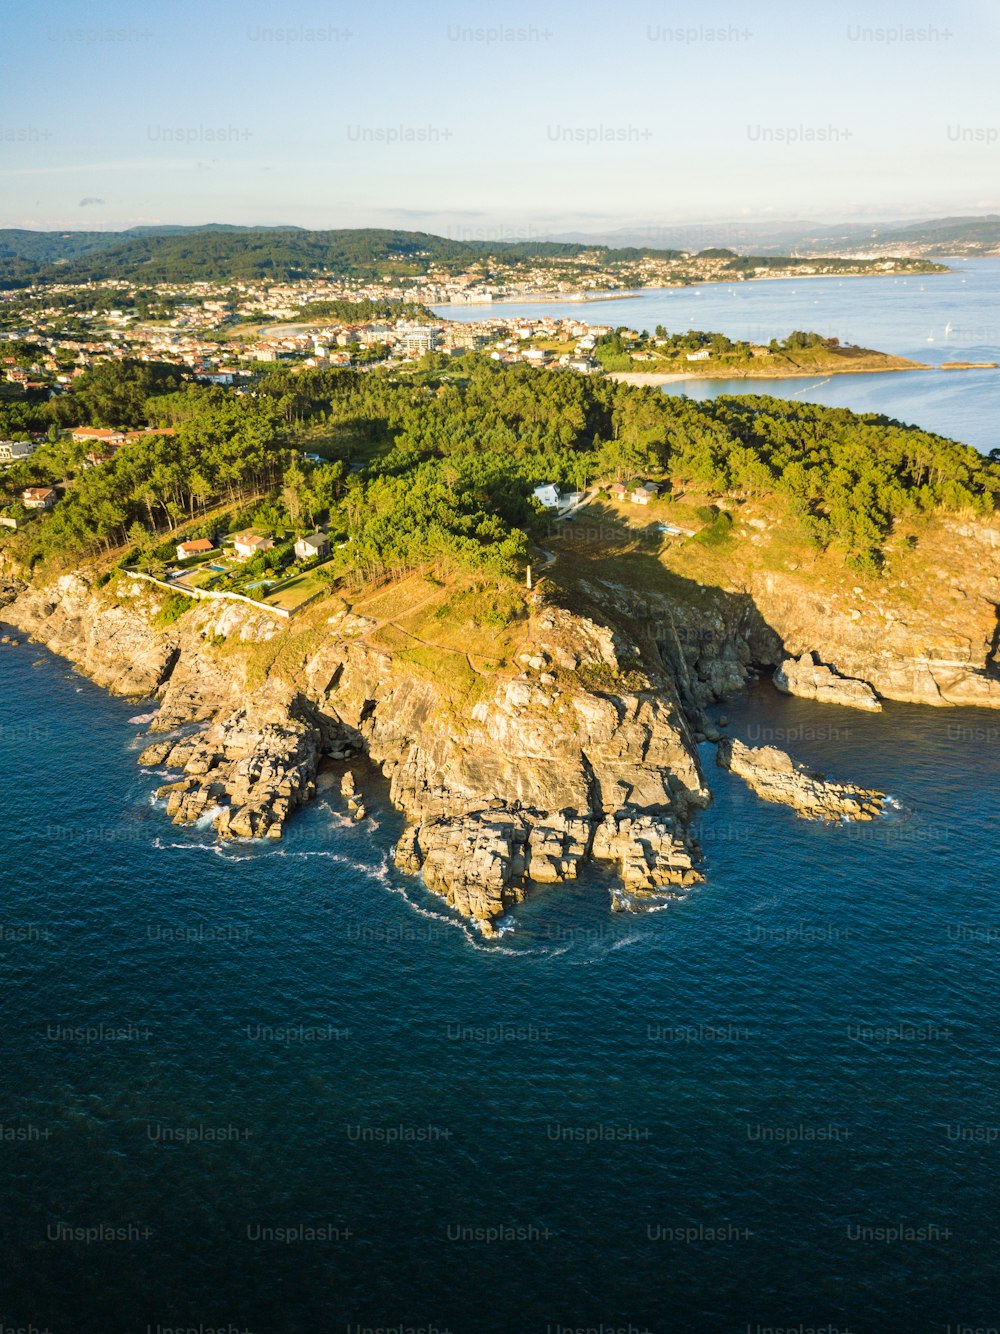 Vista aérea da costa galega na abertura da Ria de Pontevedra, onde o oceano Atlântico encontra a terra.